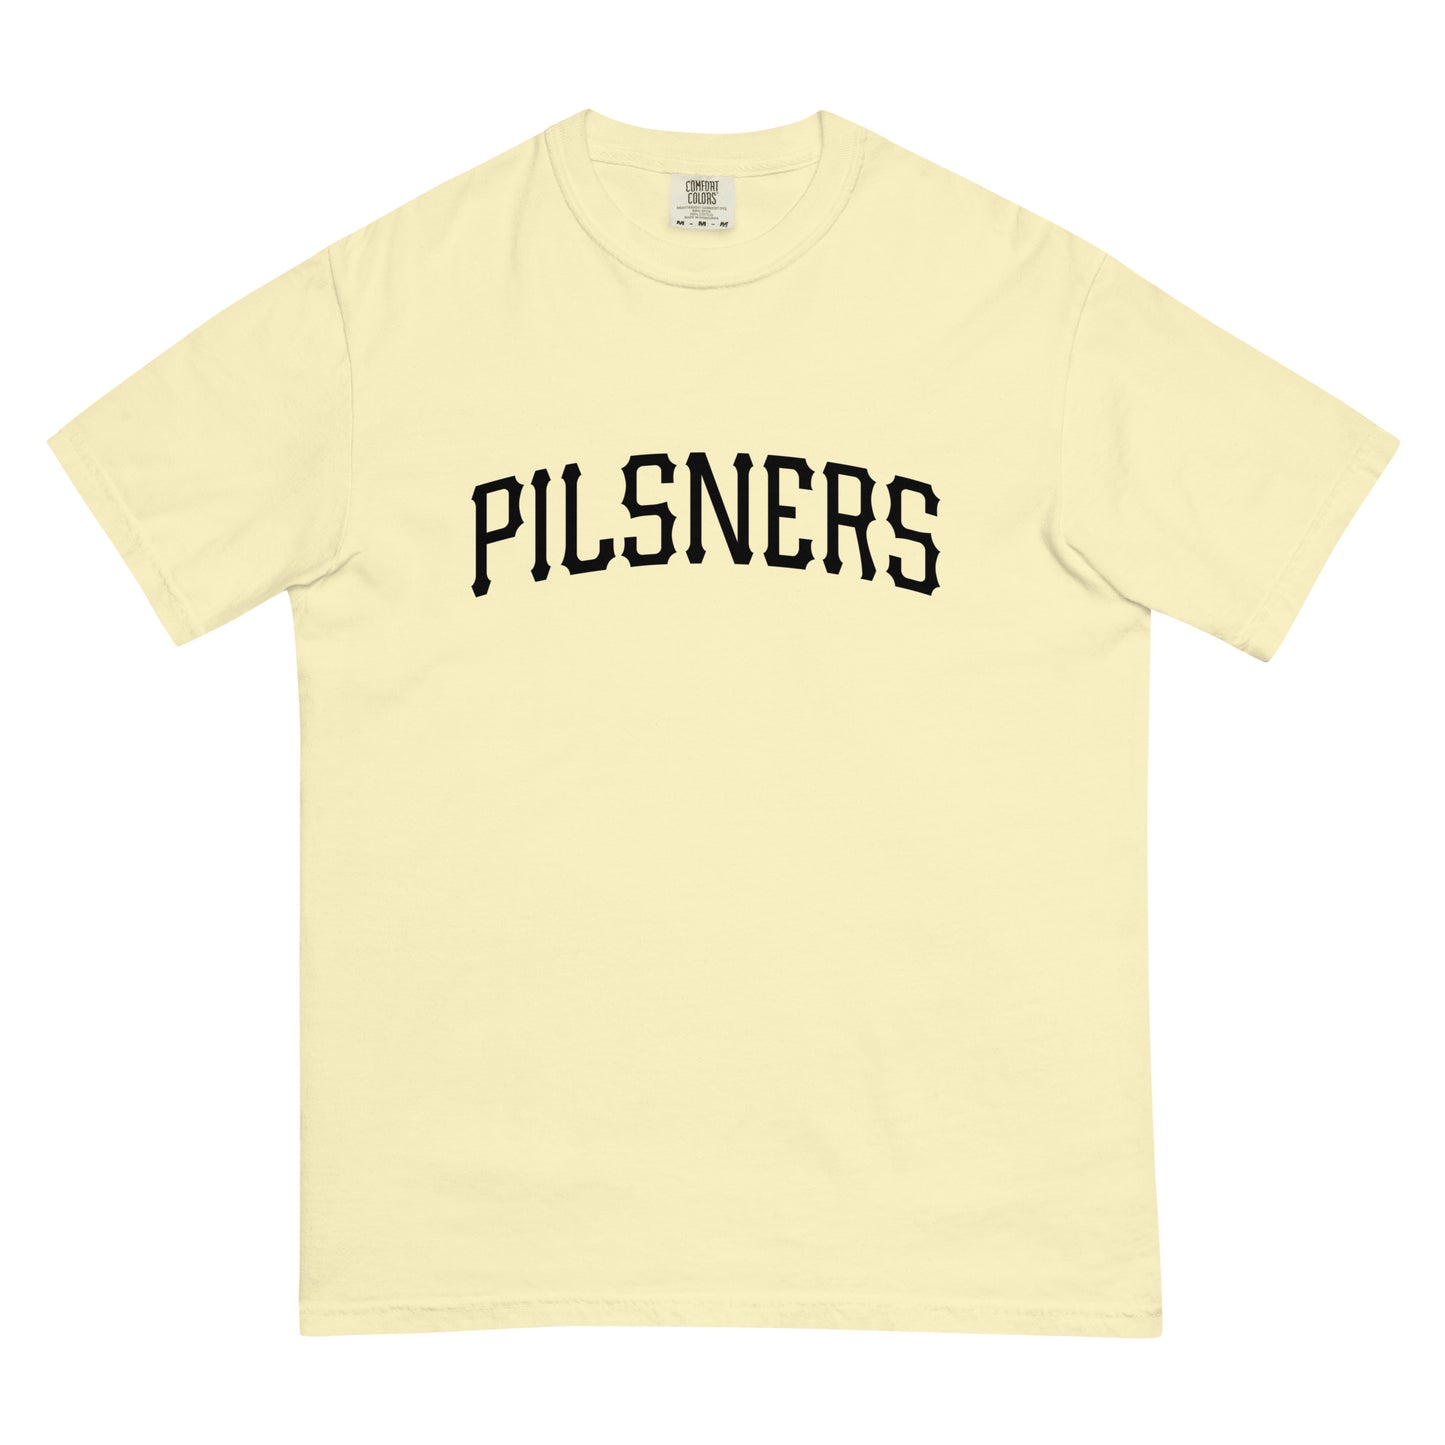 Pilsners